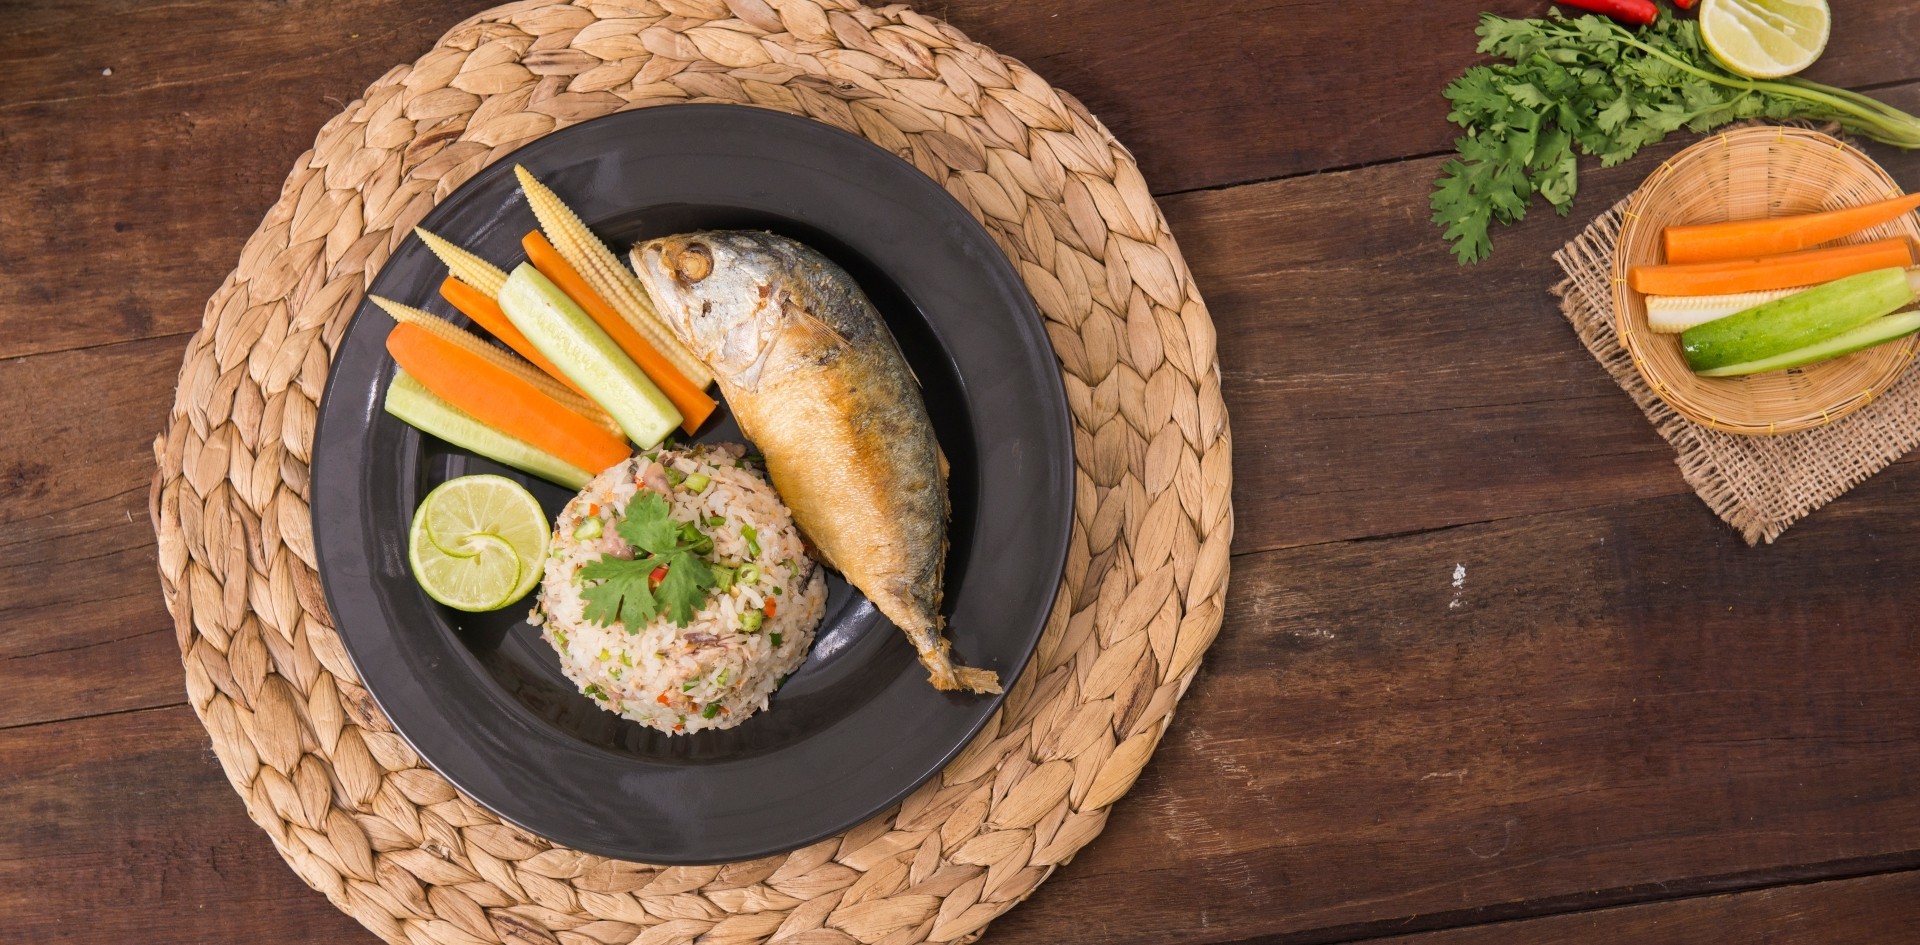 วิธีทำ “ข้าวคลุกน้ำพริกปลาทู” เมนูอาหารไทย อร่อยล้ำ จนแมวมาขอกินด้วย!